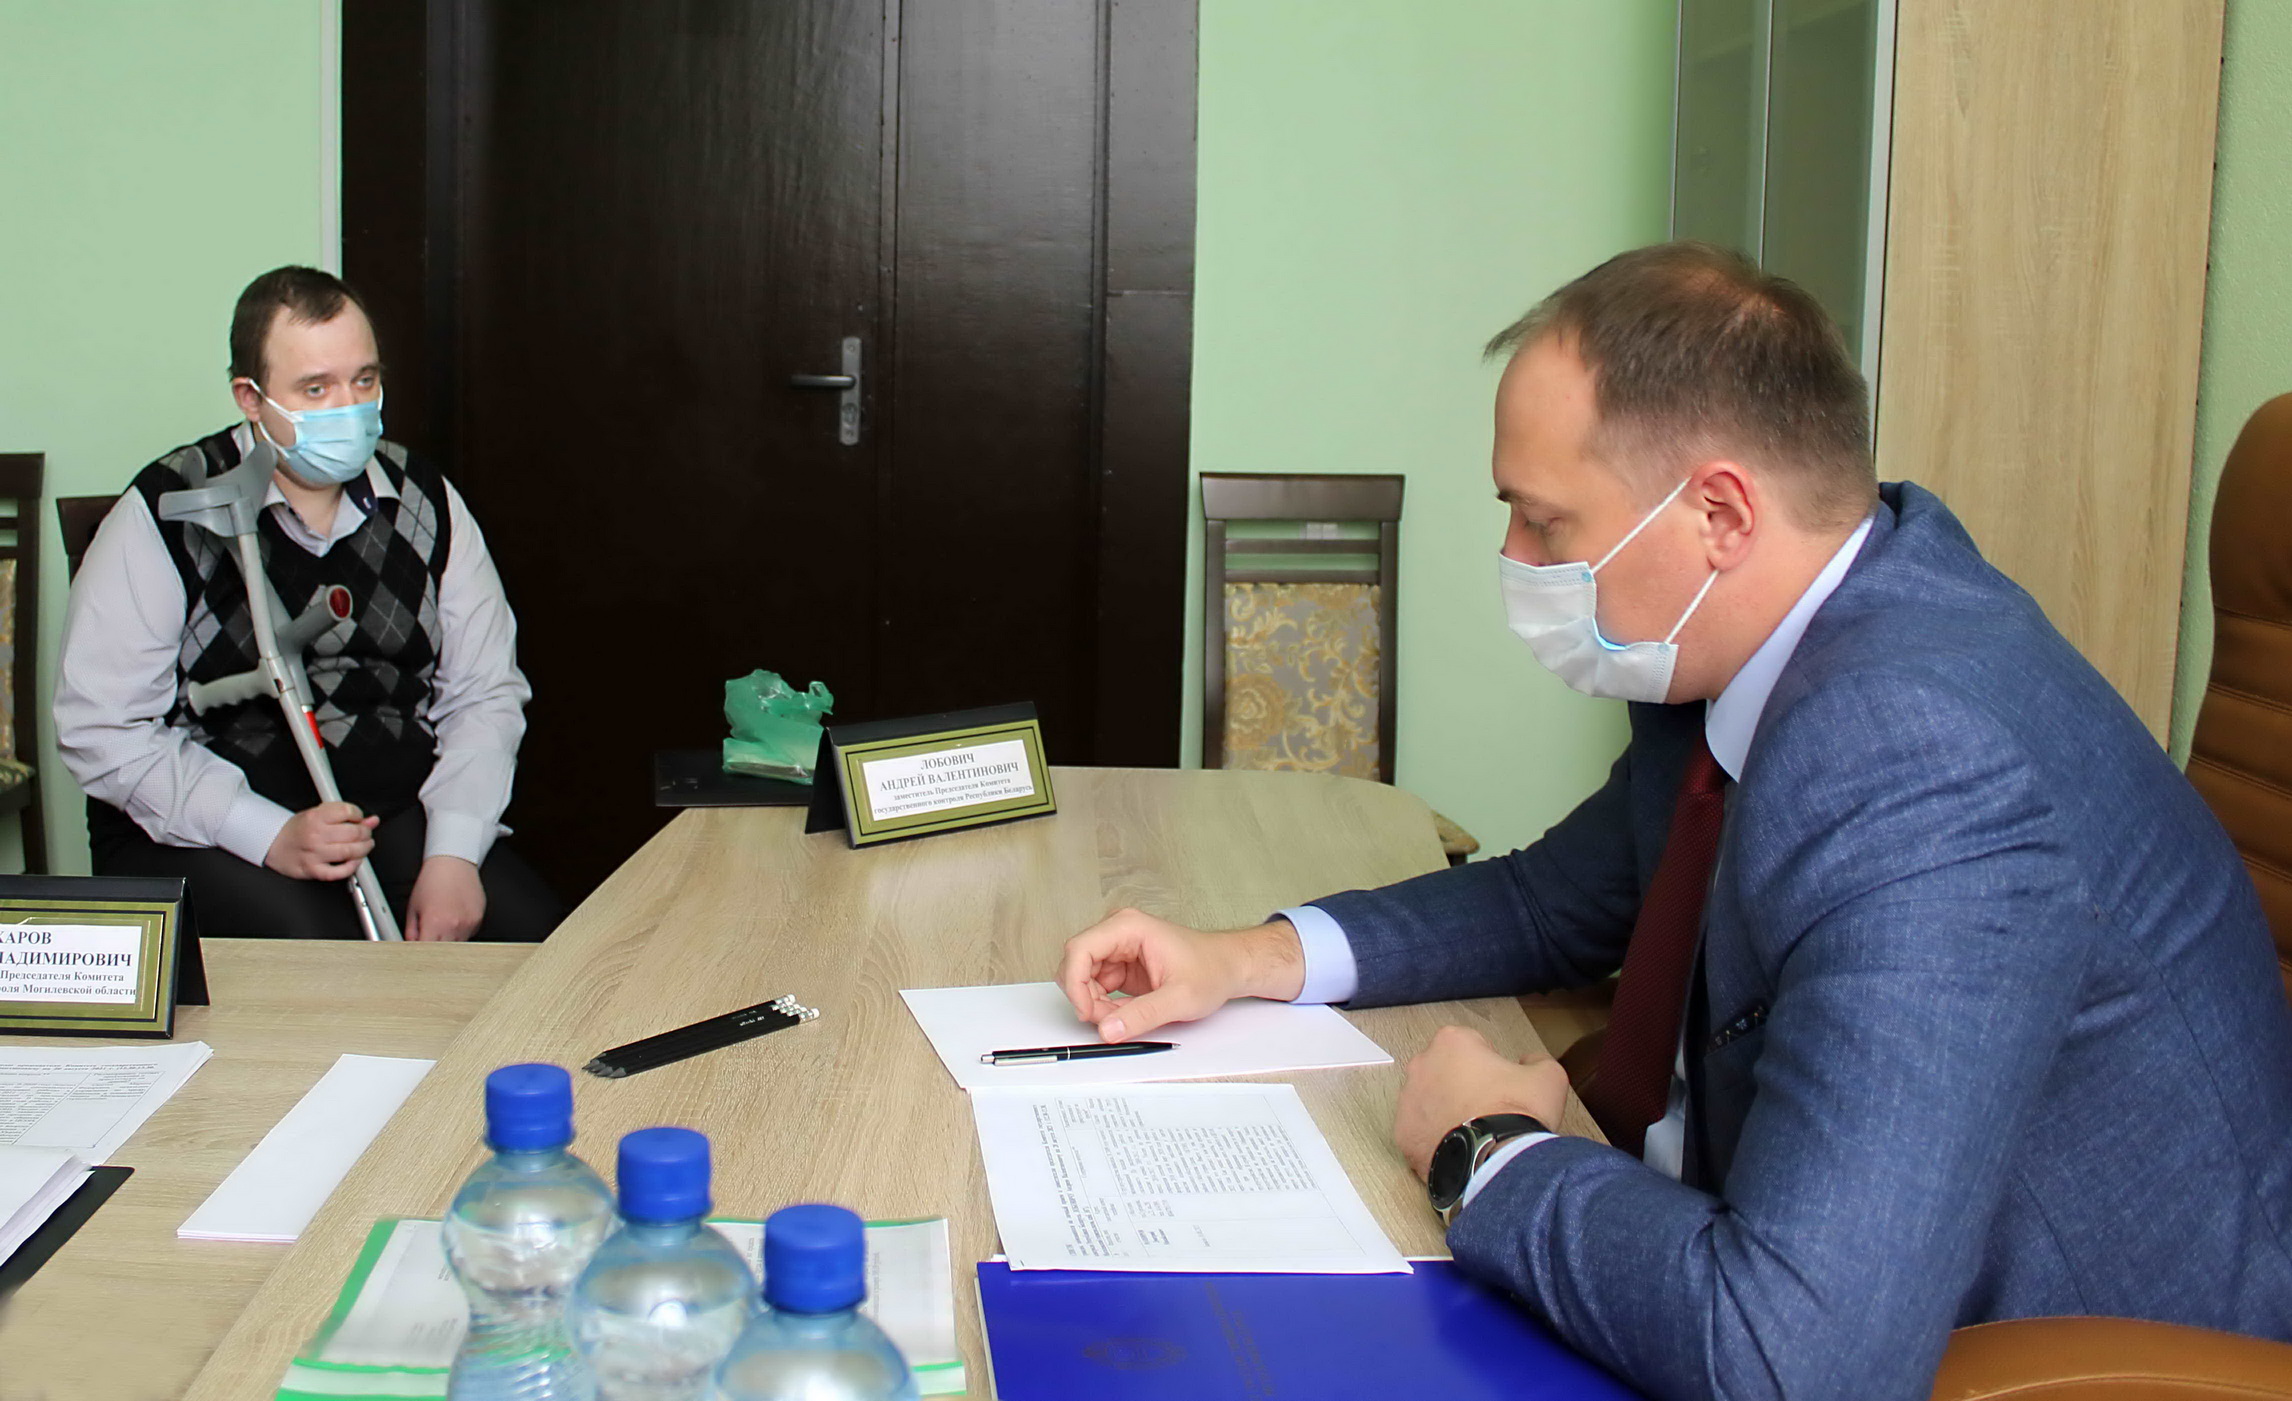 Зампредседателя КГК Андрей Лобович провел в Могилеве прямую телефонную линию и прием граждан.